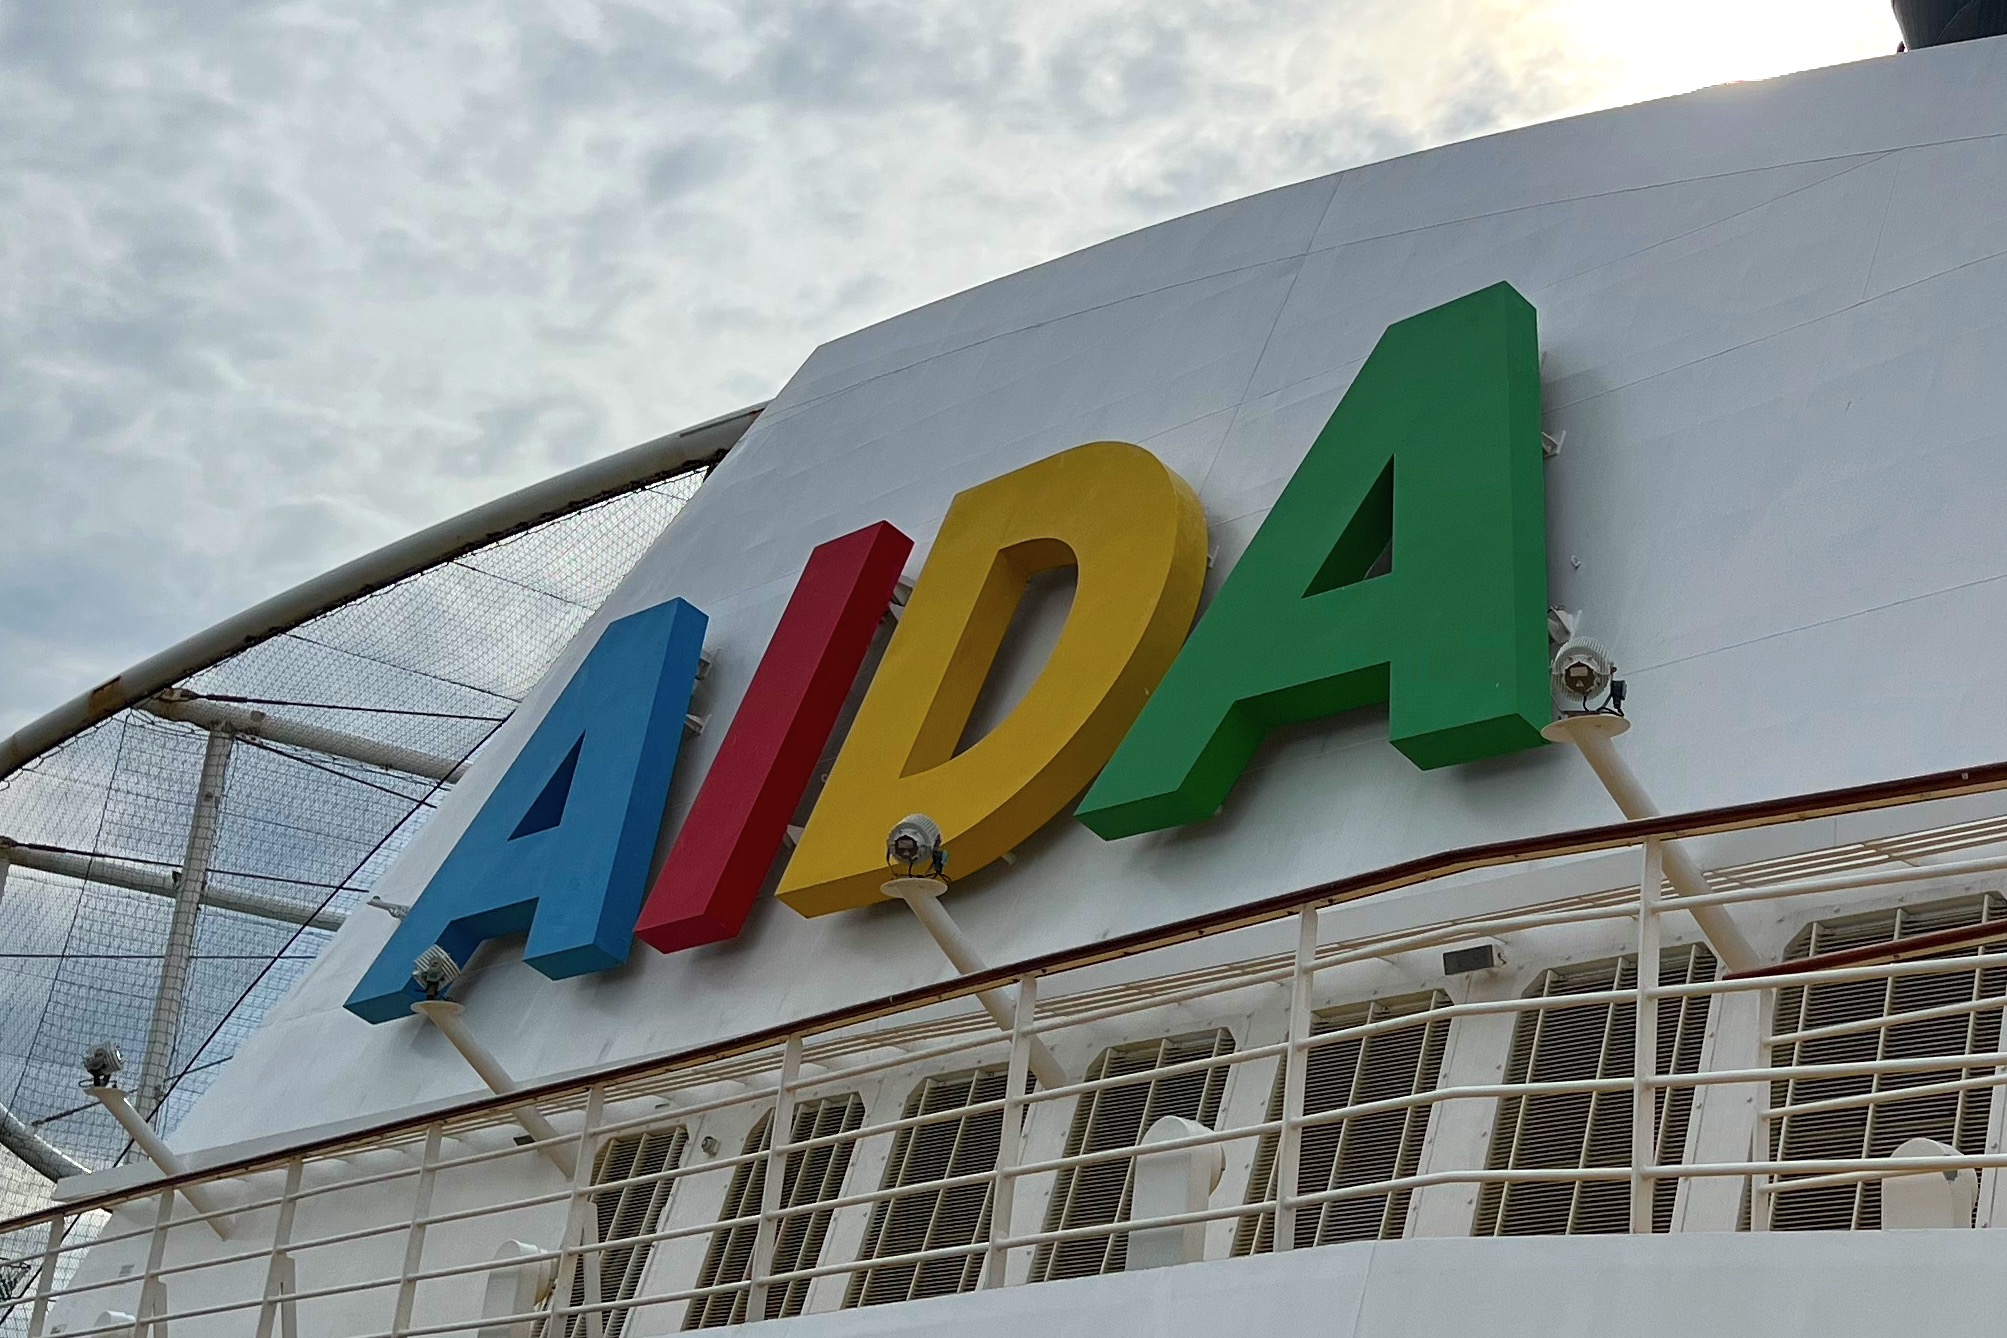 aida cruises zentrale